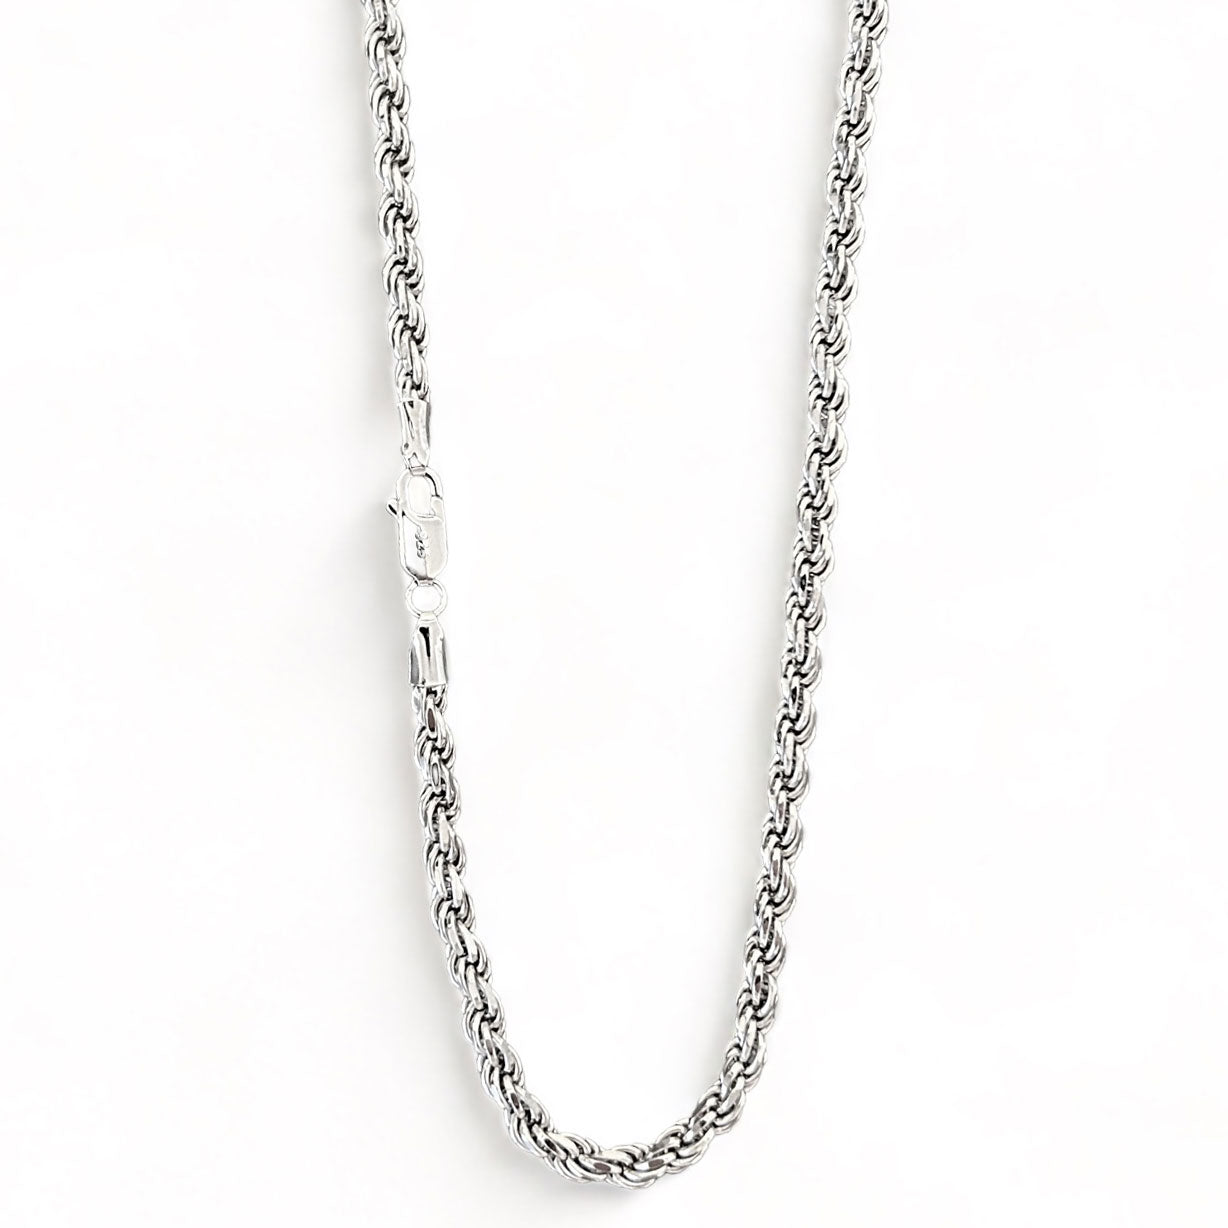 Kordelkette Rope Chain 4mm - 925 Silber